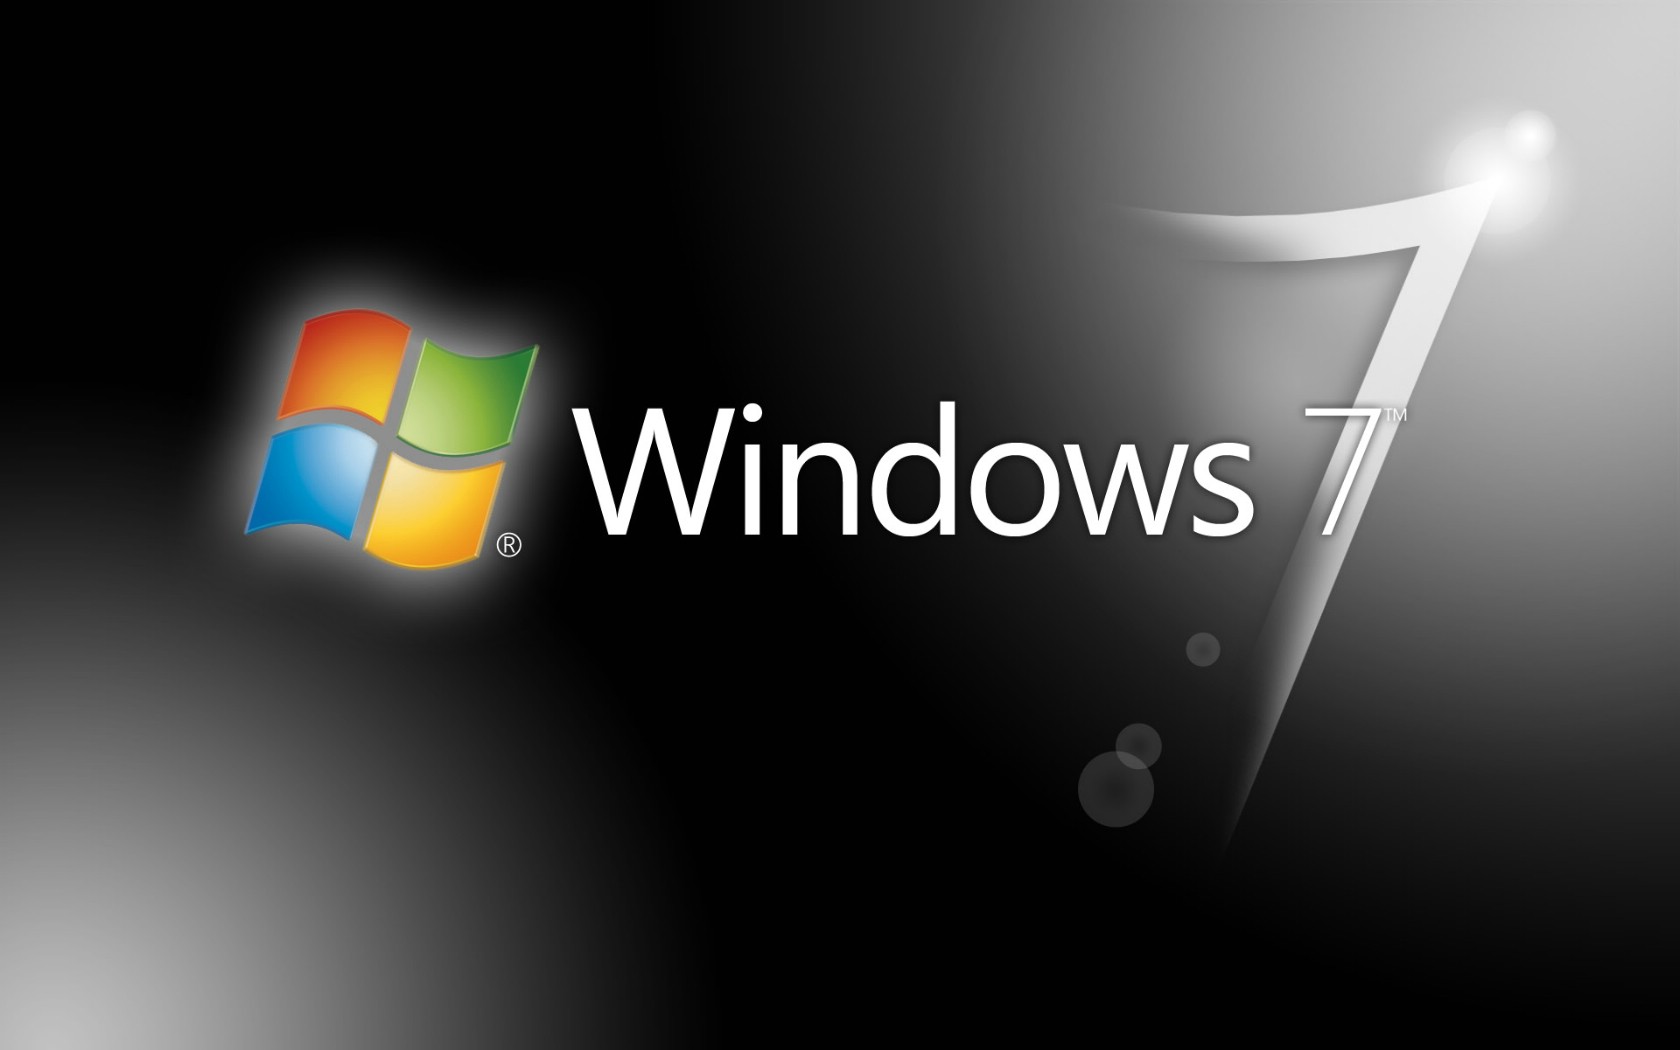 微软披露Win7默认背景、登录界面设计历程-微软,Microsoft,Windows 7 ——快科技(驱动之家旗下媒体)--科技改变未来